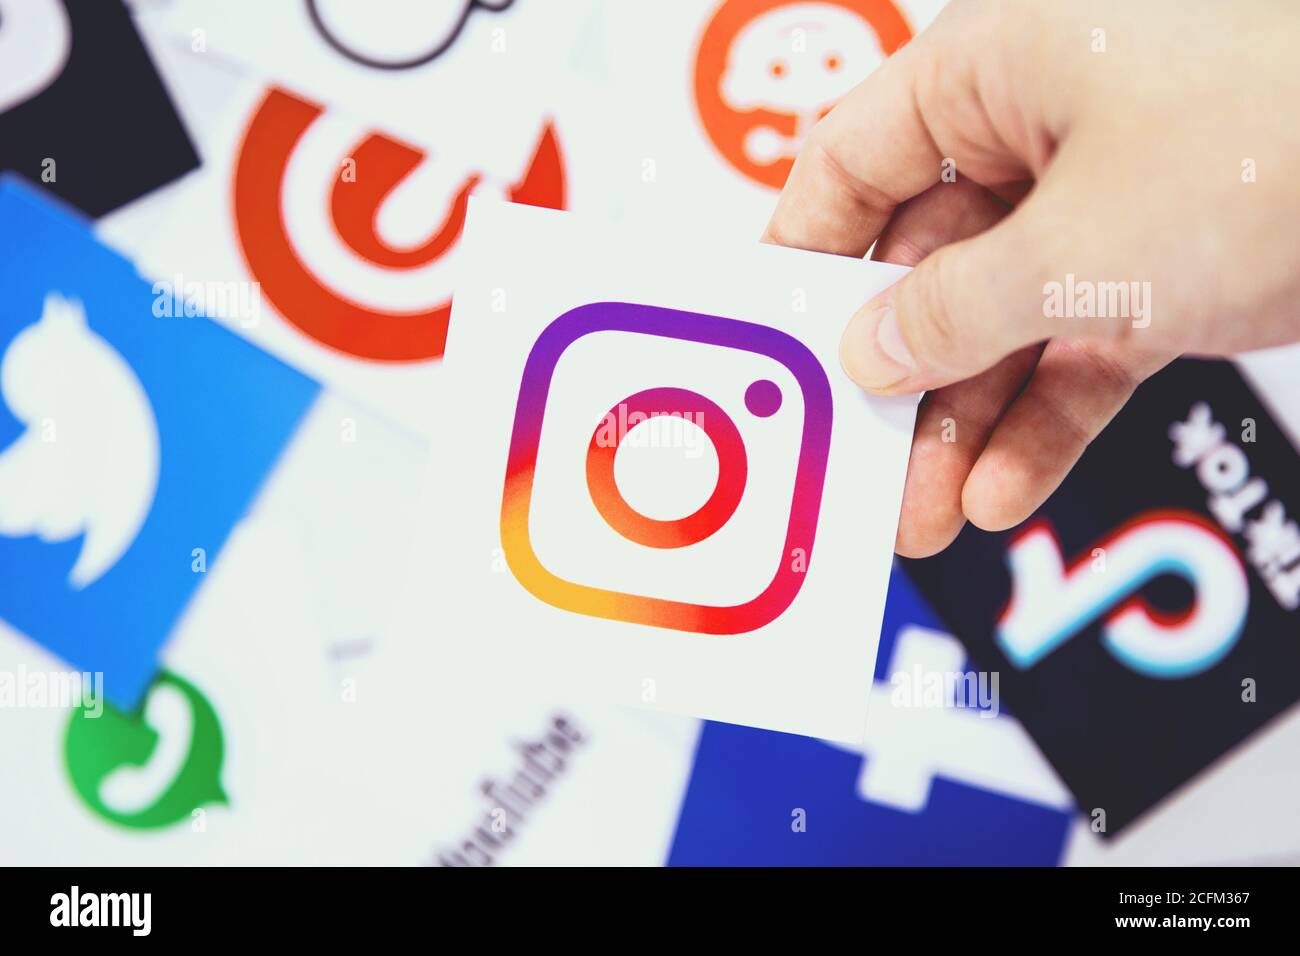 WROCLAW, POLOGNE - 29 août 2020 : la main tient le logo Instagram sur un autre symbole des médias sociaux. Instagram est un soc américain de partage de photos et de vidéos Banque D'Images